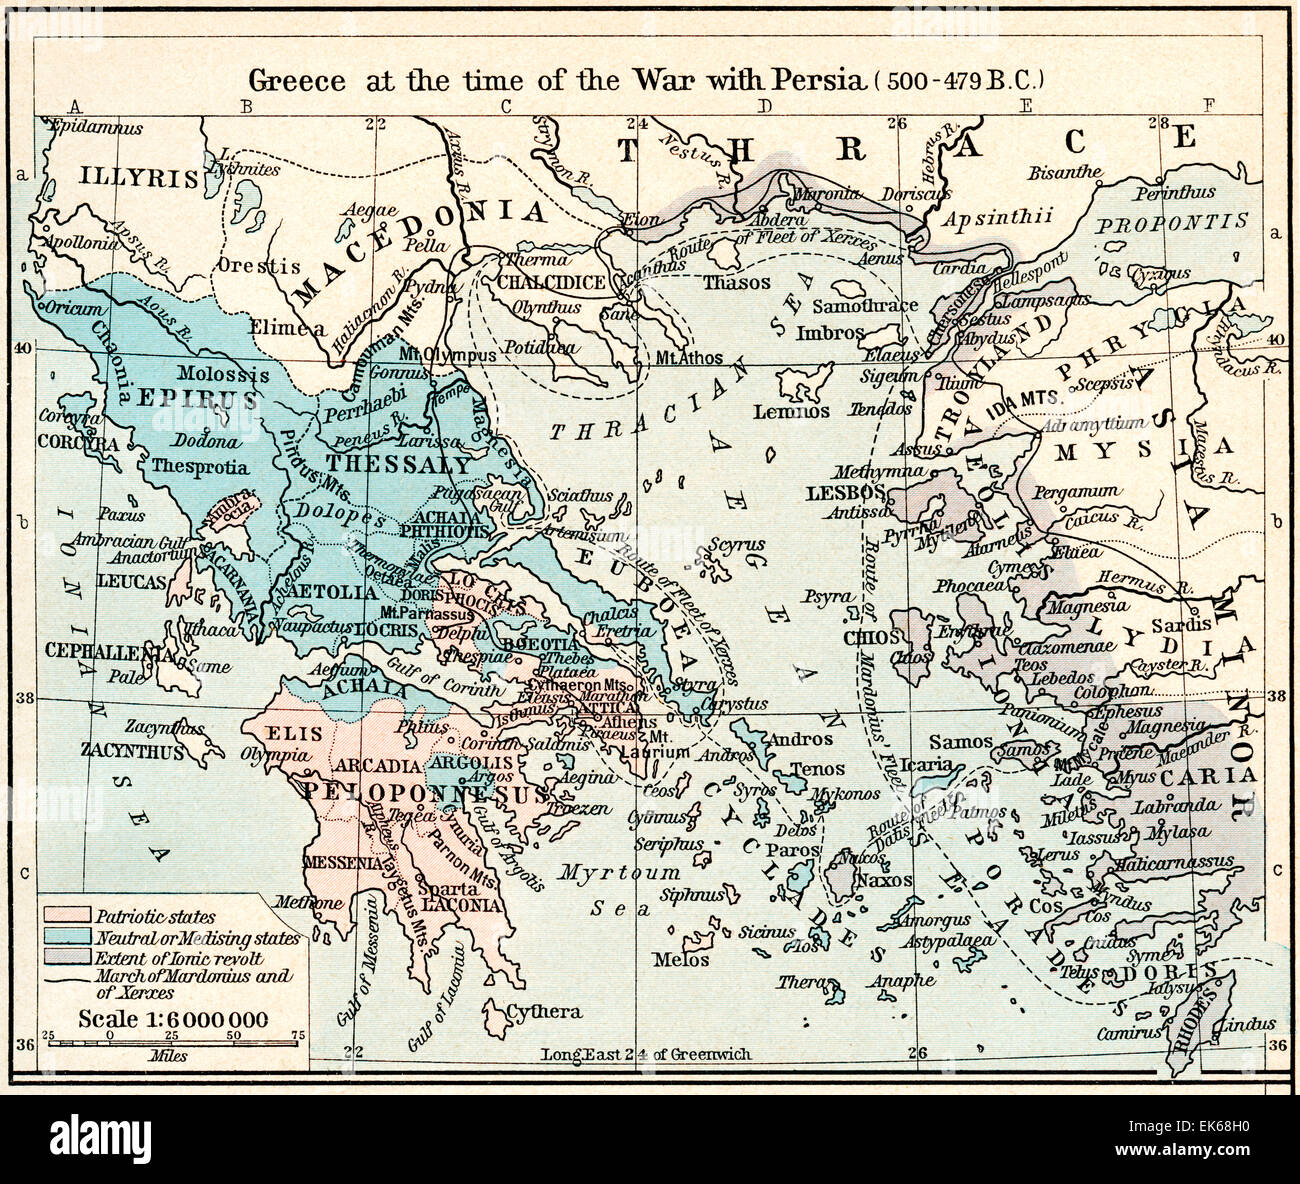 Mapa de Grecia en la época de la guerra con Persia, 500 - 479 A.C. el imperio ateniense a su altura. Foto de stock